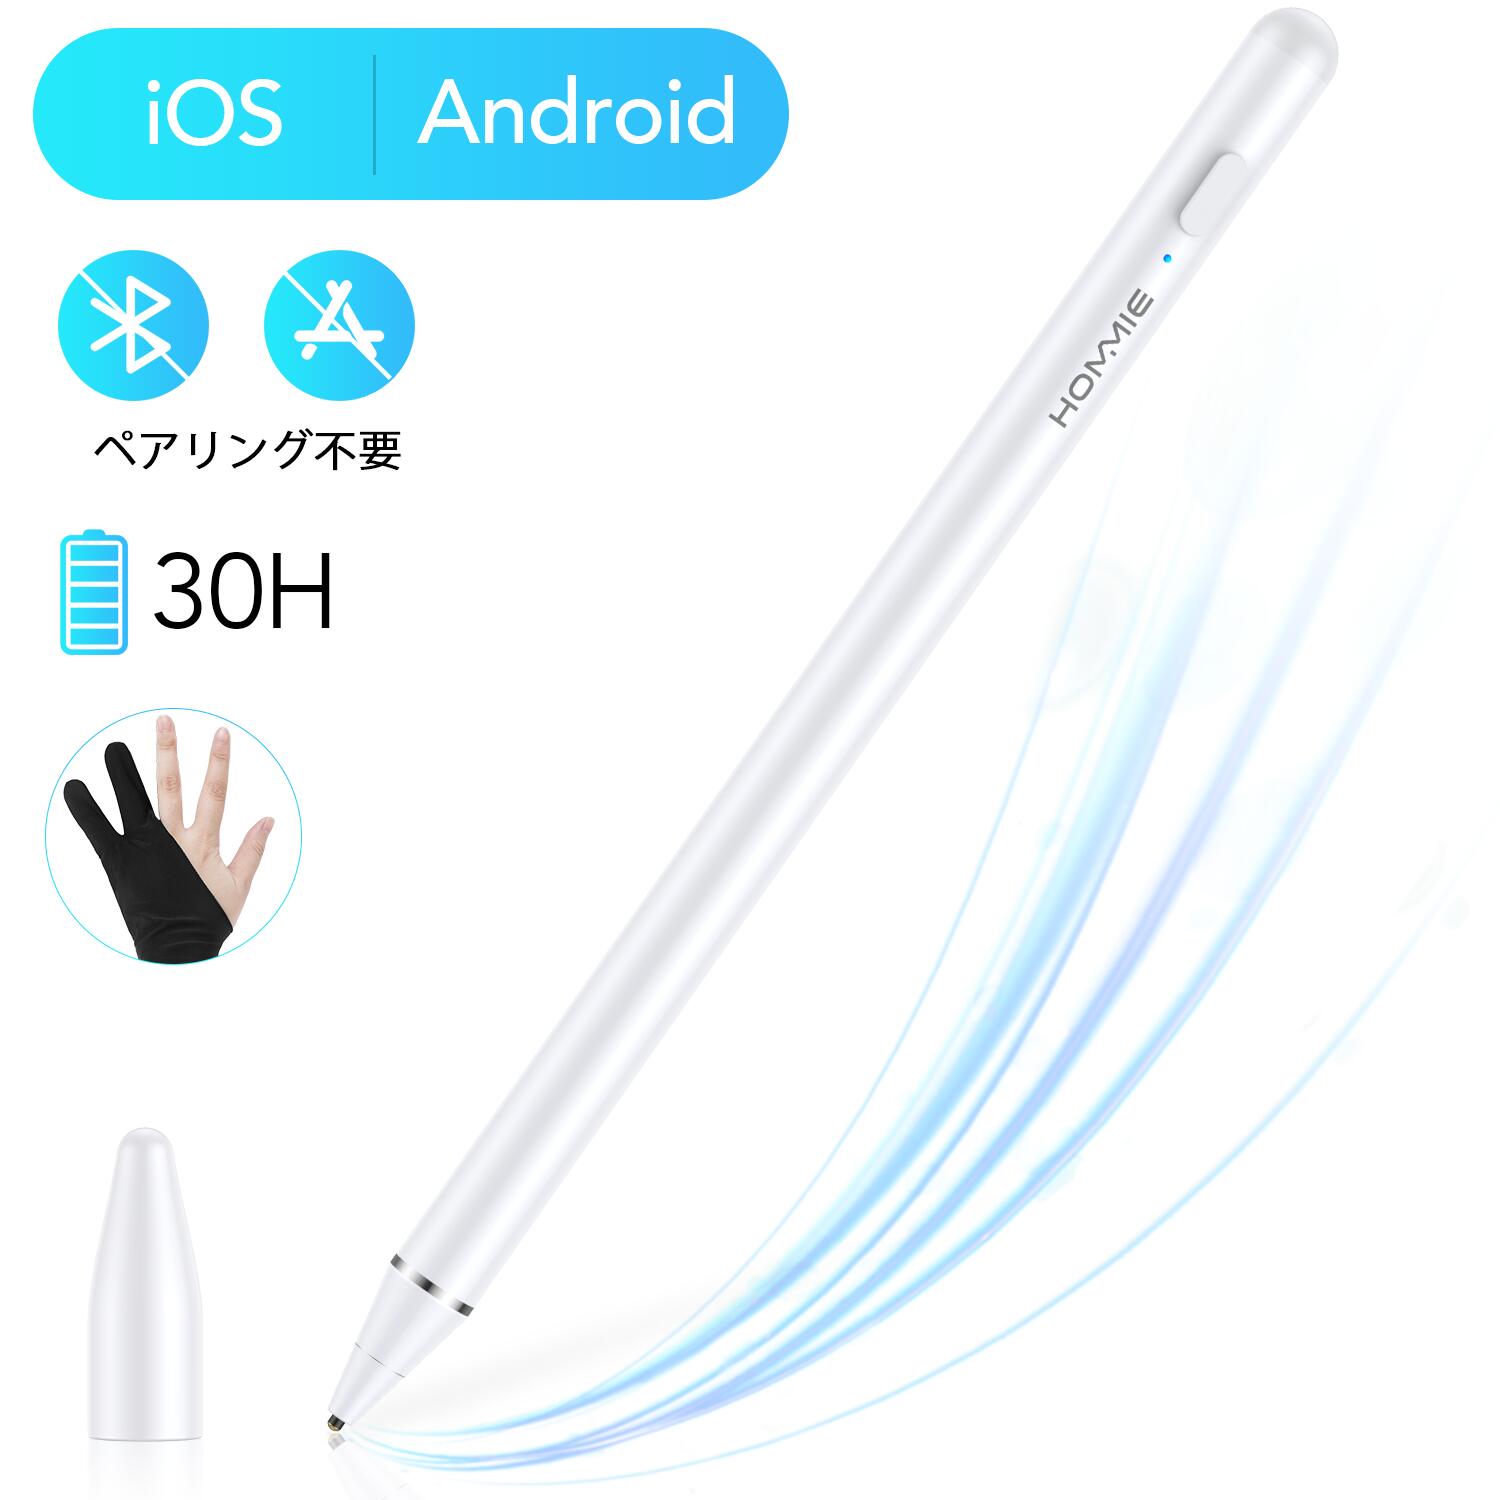 iPad タッチペン スタイラスペン ios Android対応 タブレット iPhone 